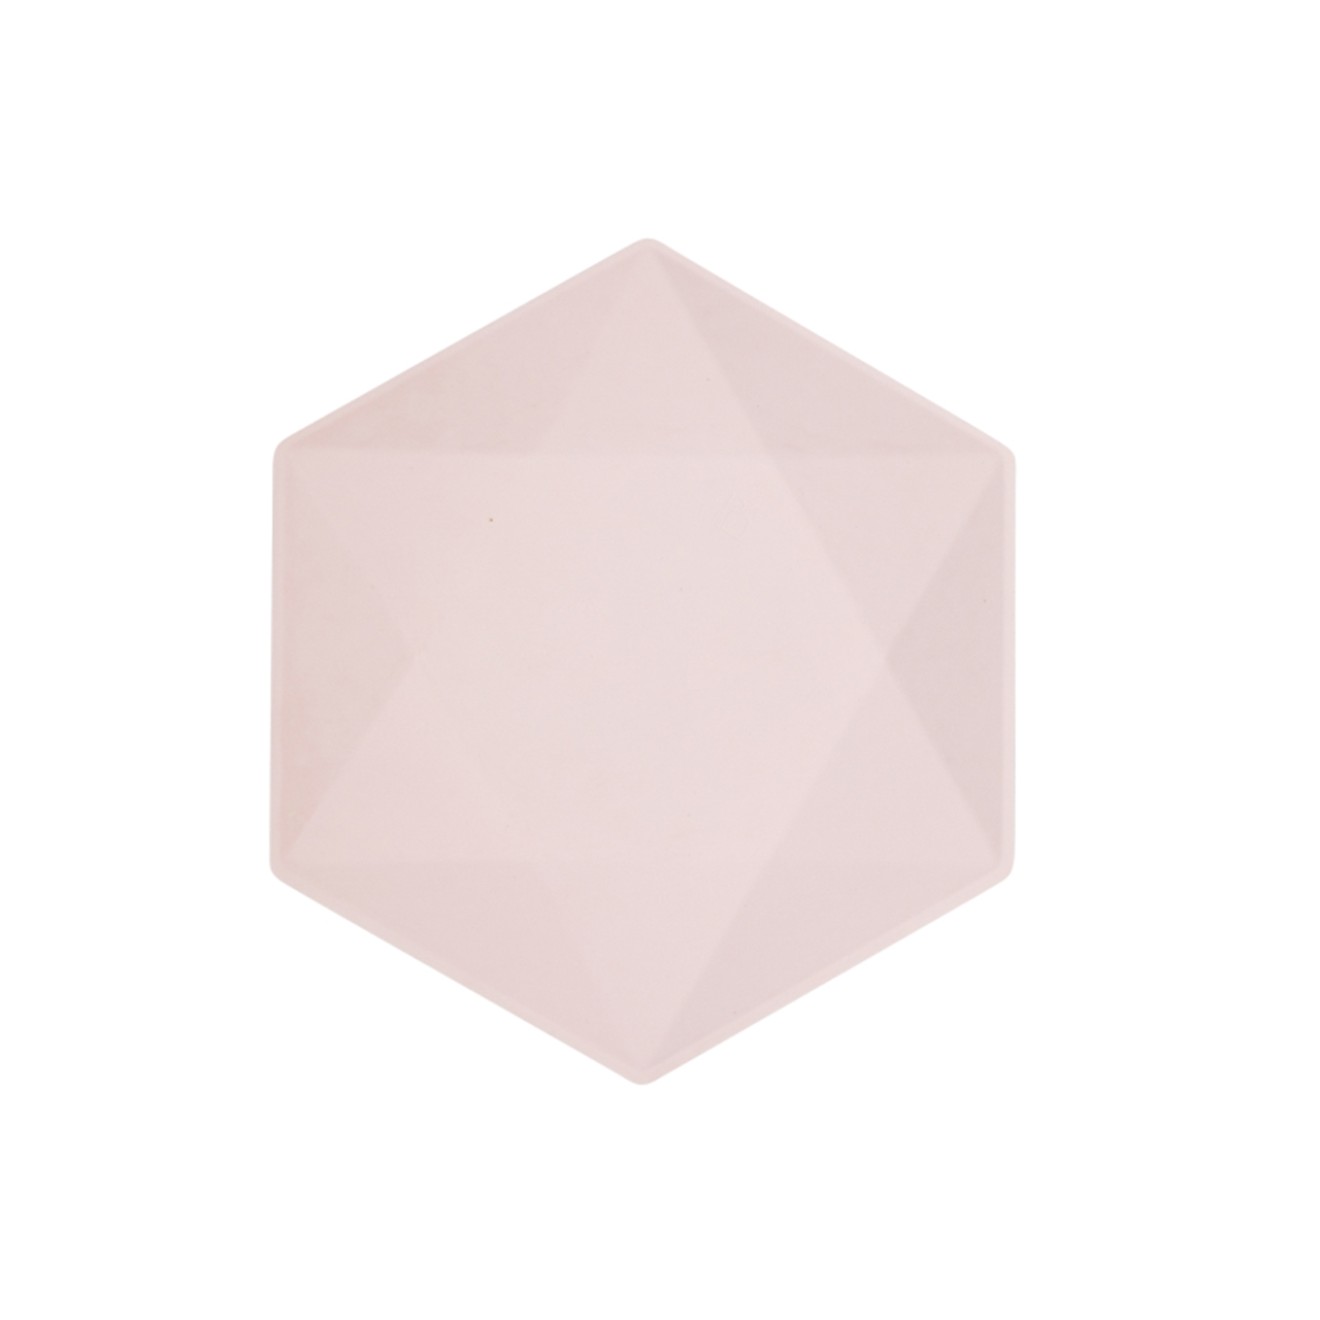 6 Partyteller - Hexagonal - pink